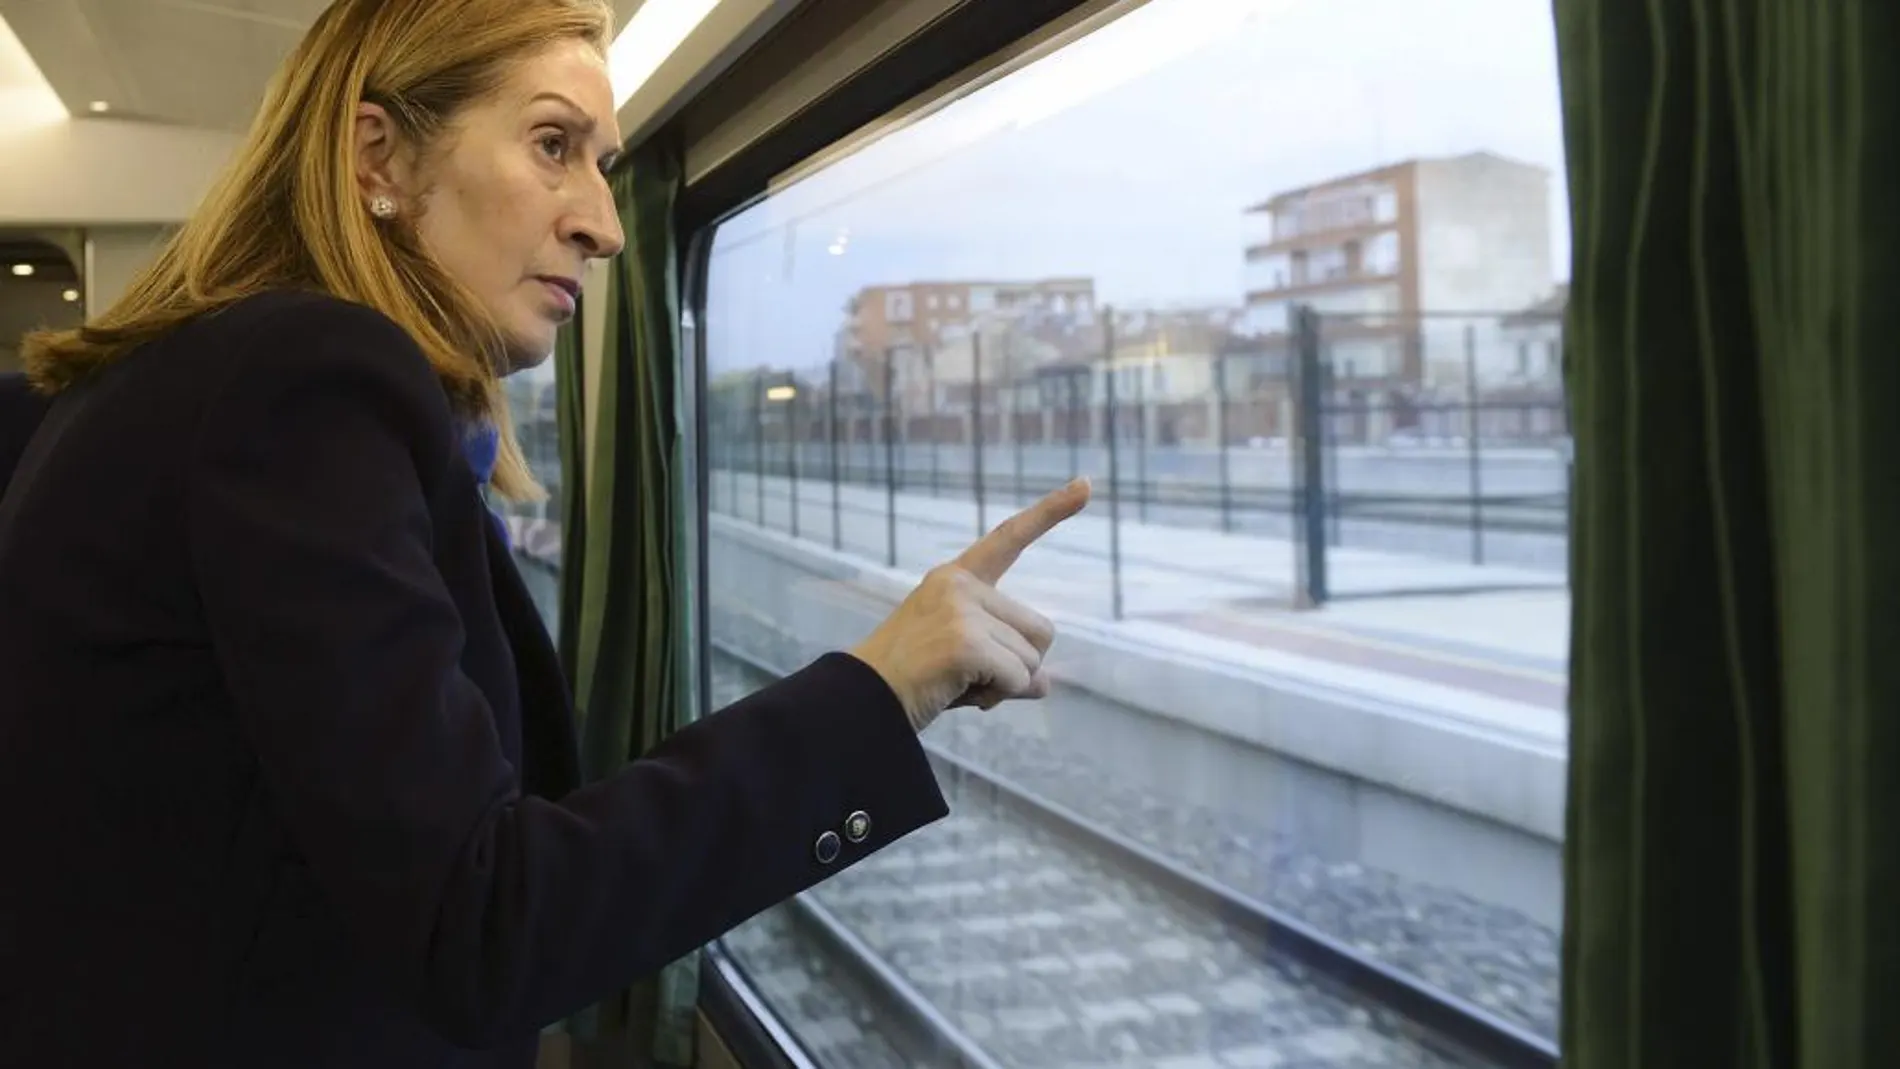 La ministra de Fomento, Ana Pastor observa la estación de Venta de Baños desde el tren laboratorio con el que han recorrido la línea Valladolid-Palencia-León.